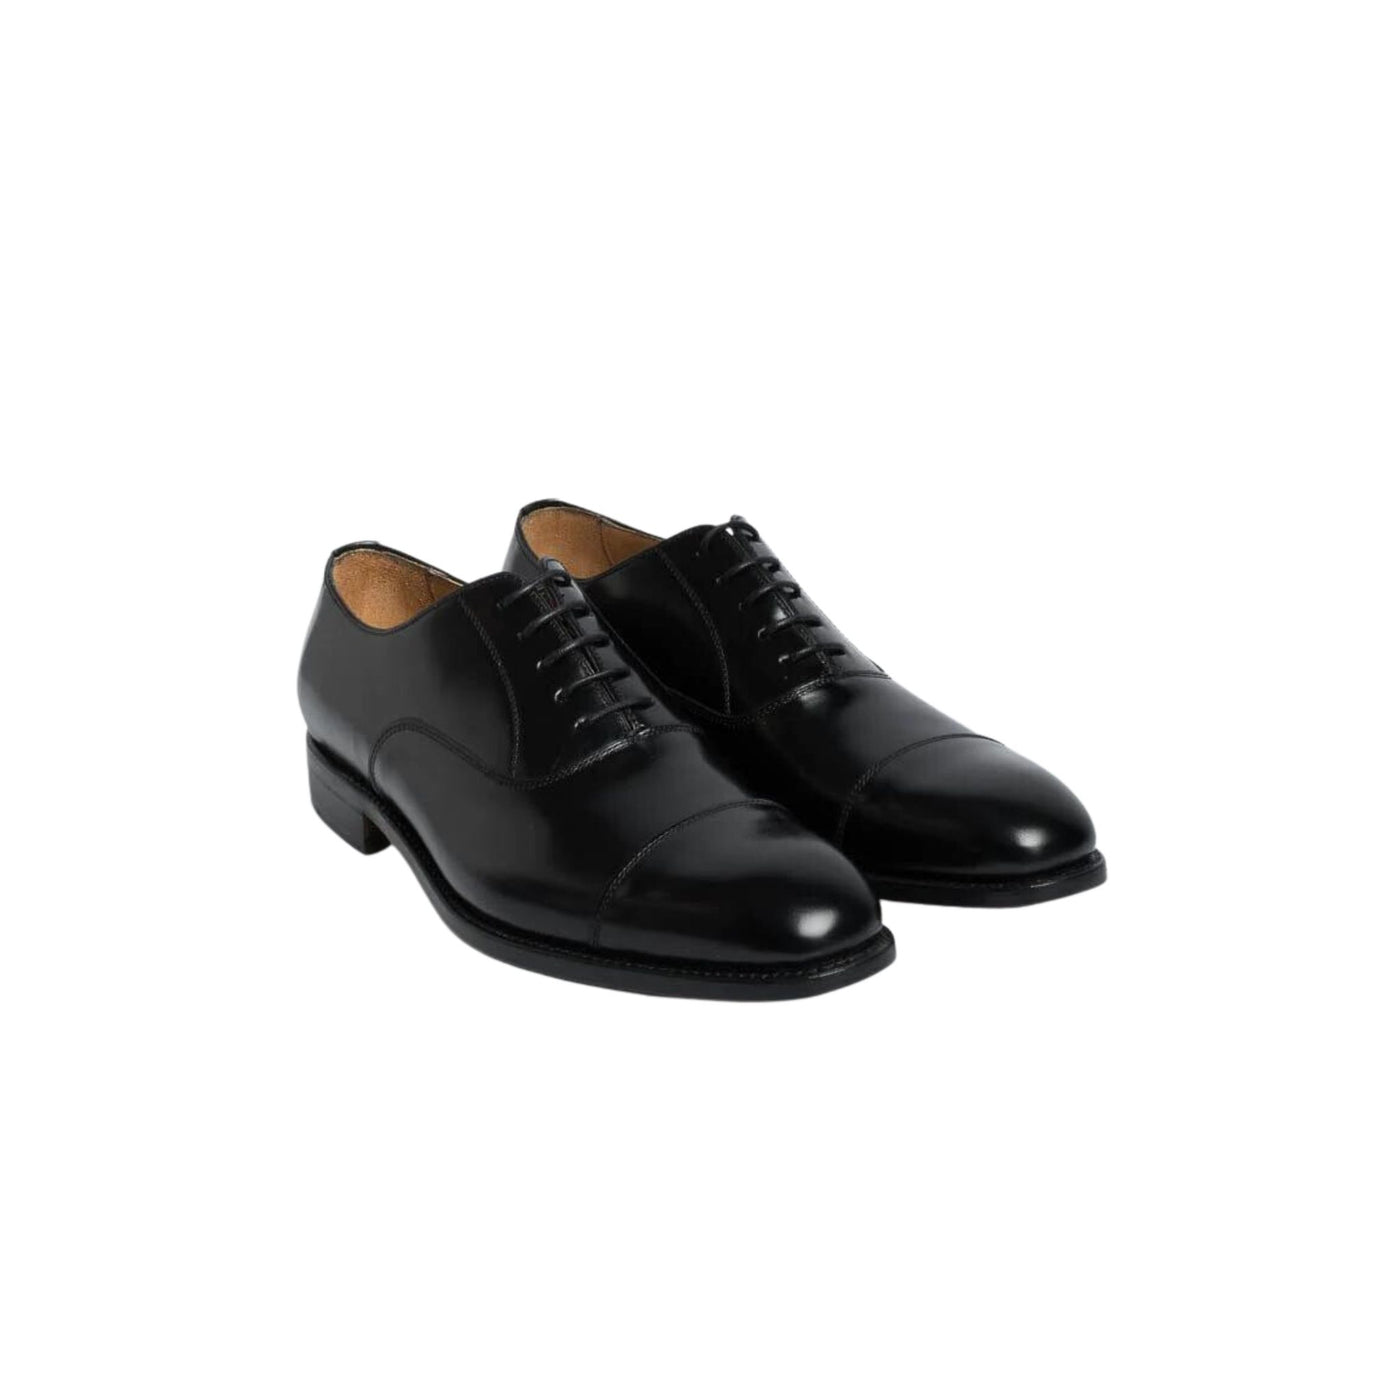 Suede men's shoes 5217H0293